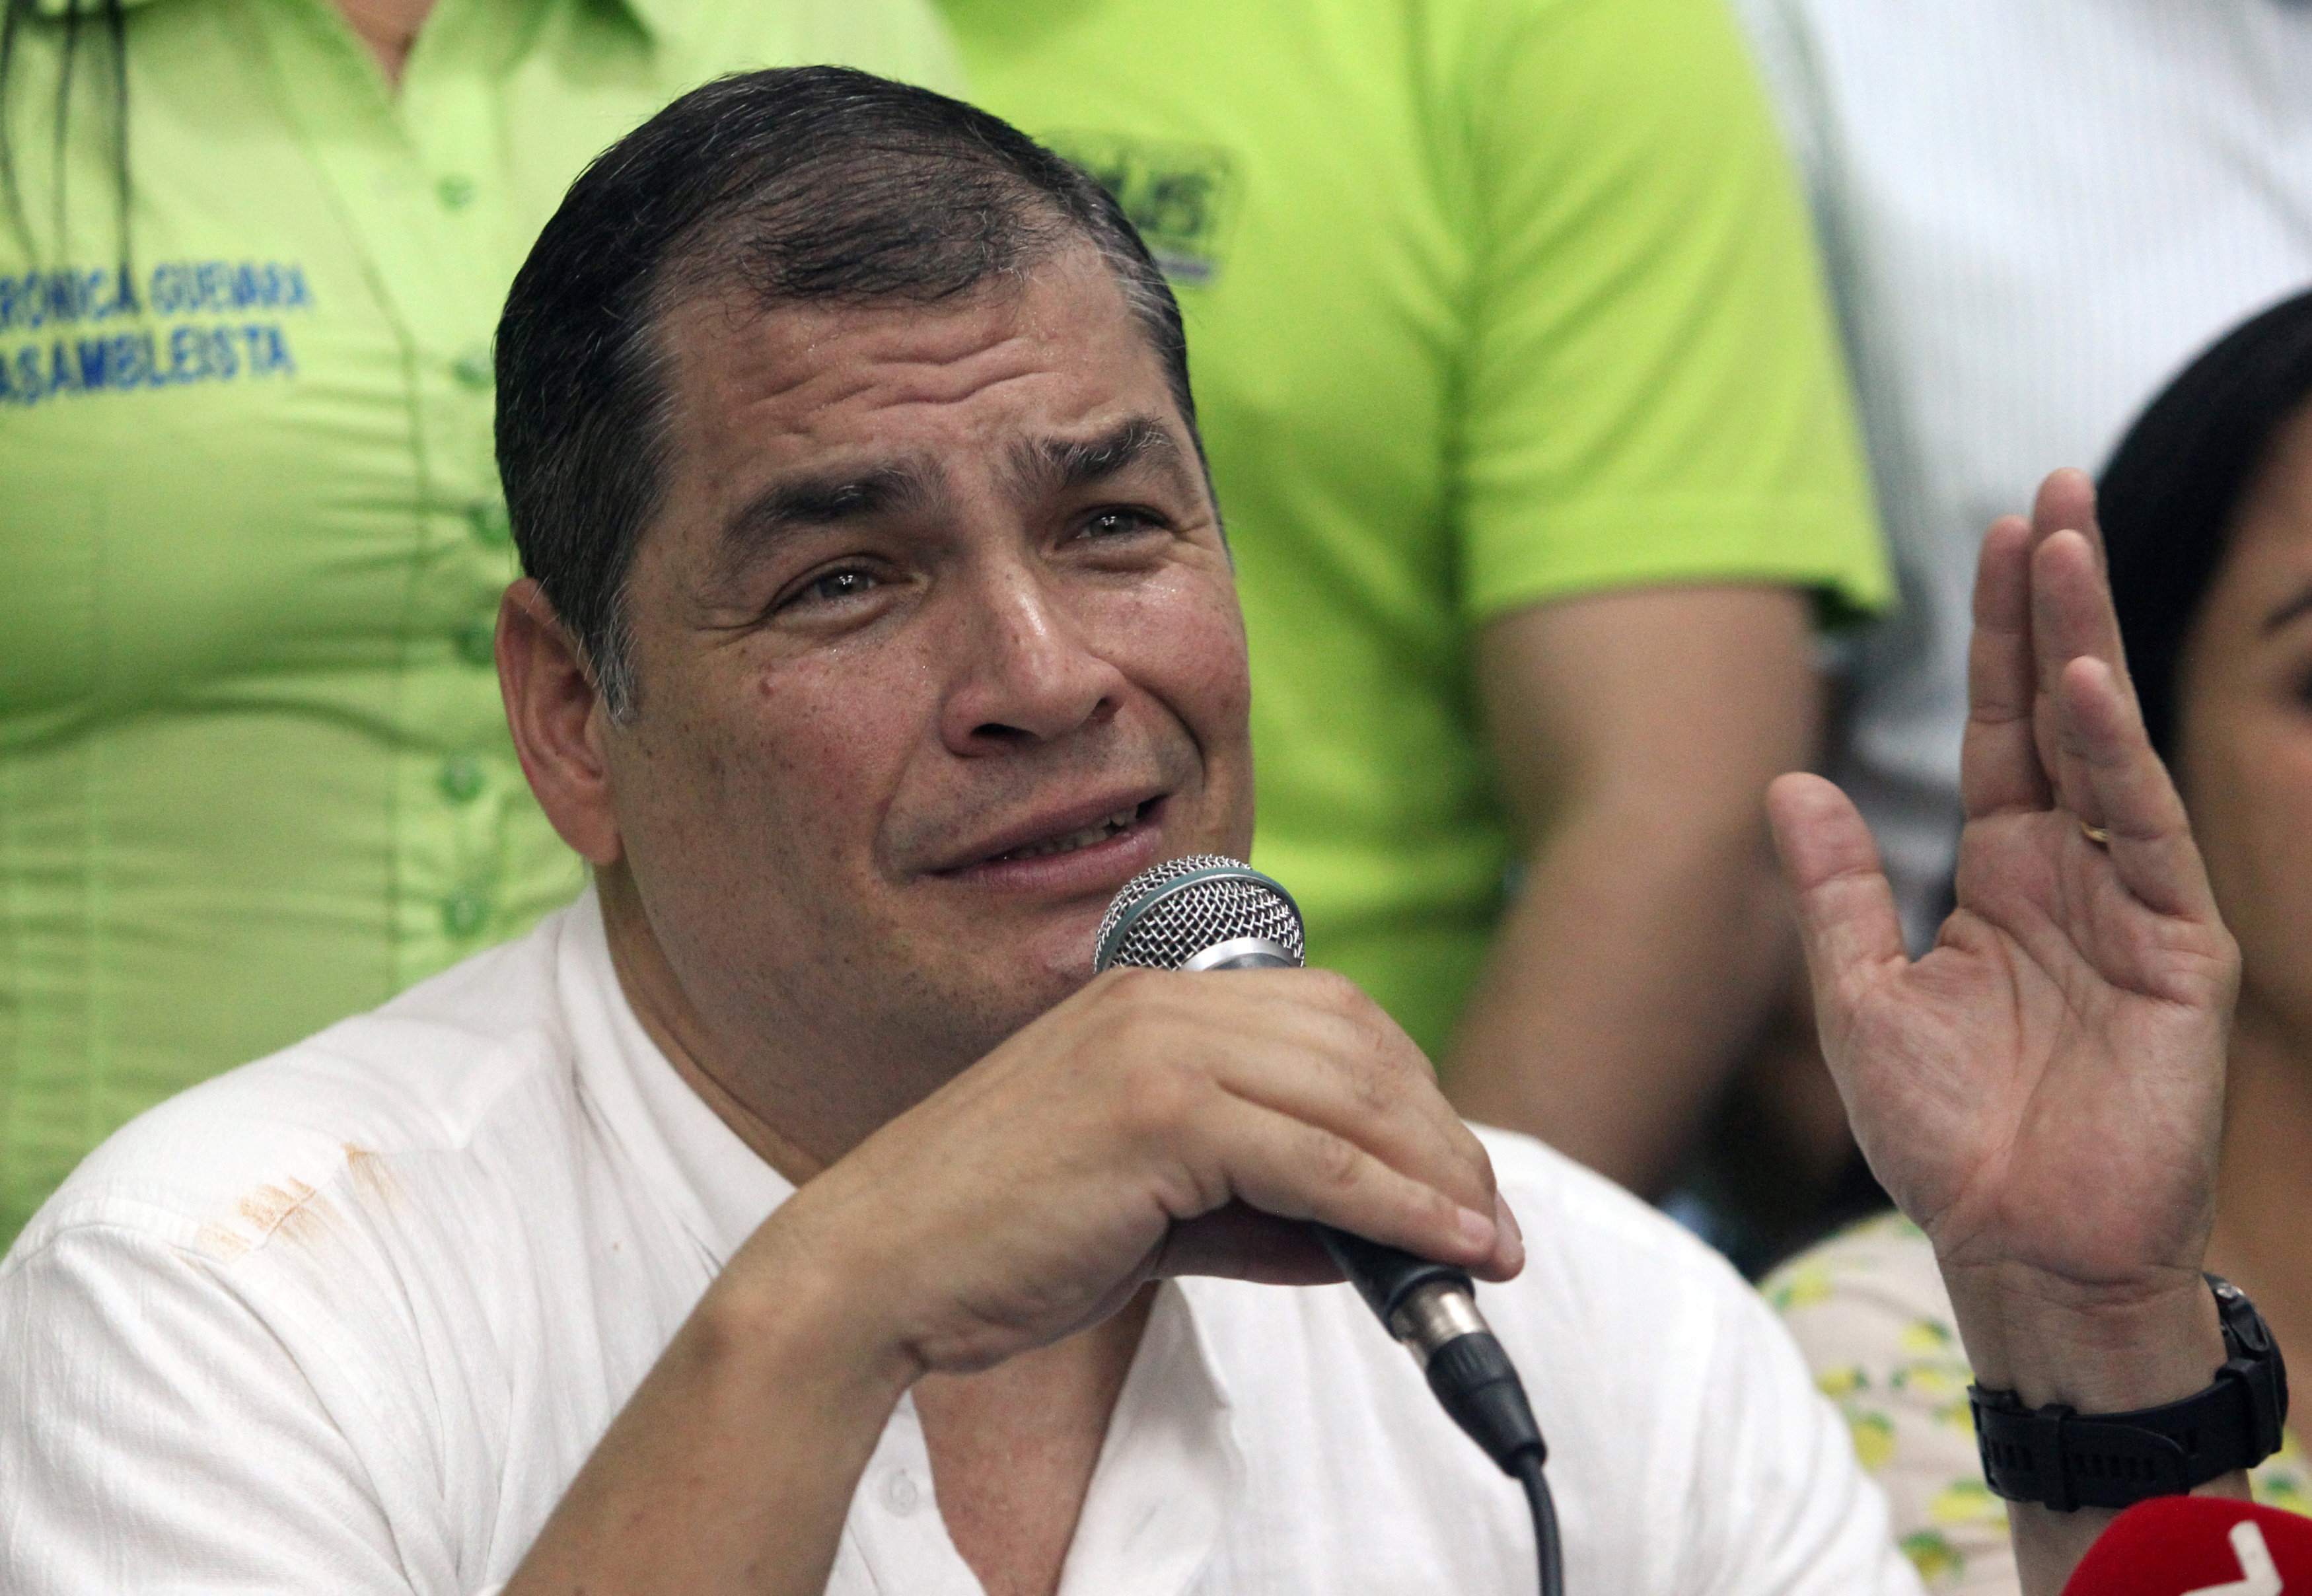 Con una sonrisa, expresidente Correa se pronuncia tras orden de aprehensión en su contra por corrupción (Video)